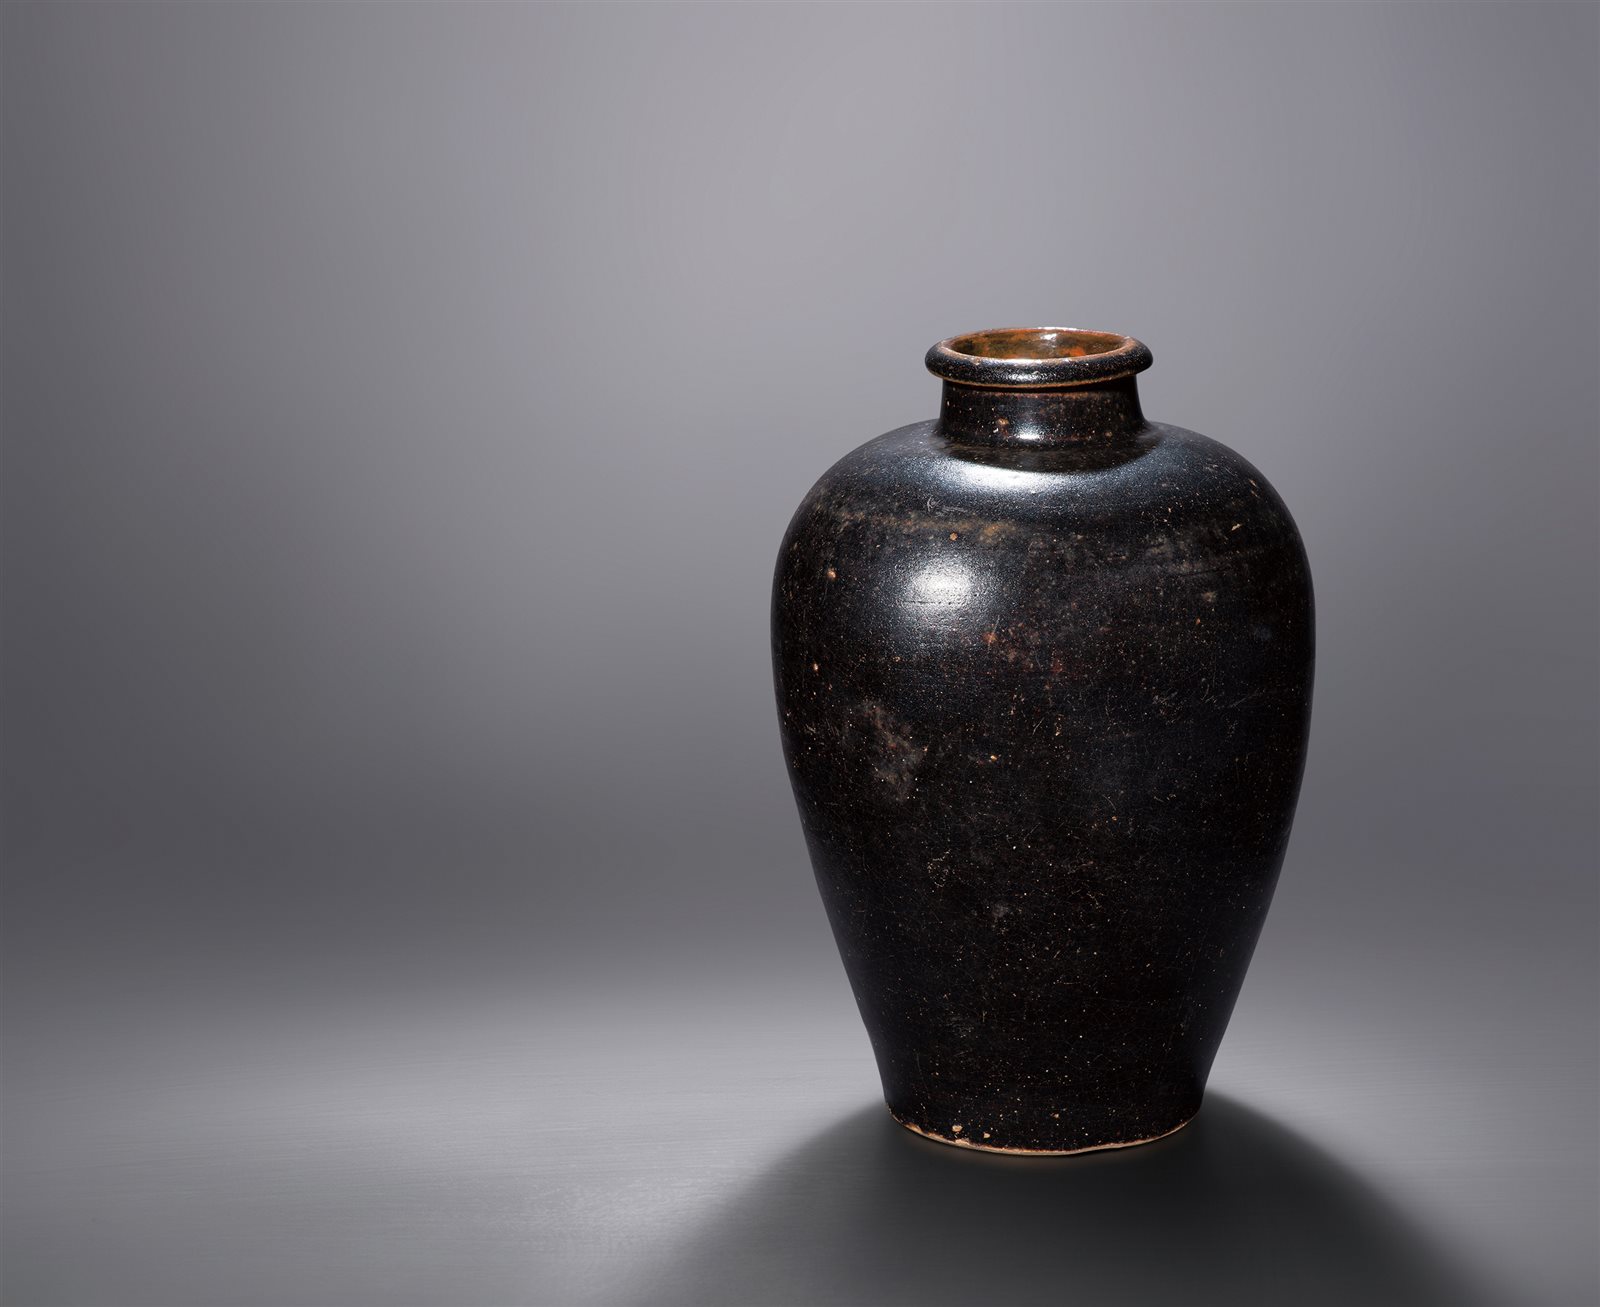  吉州窑黑釉梅瓶